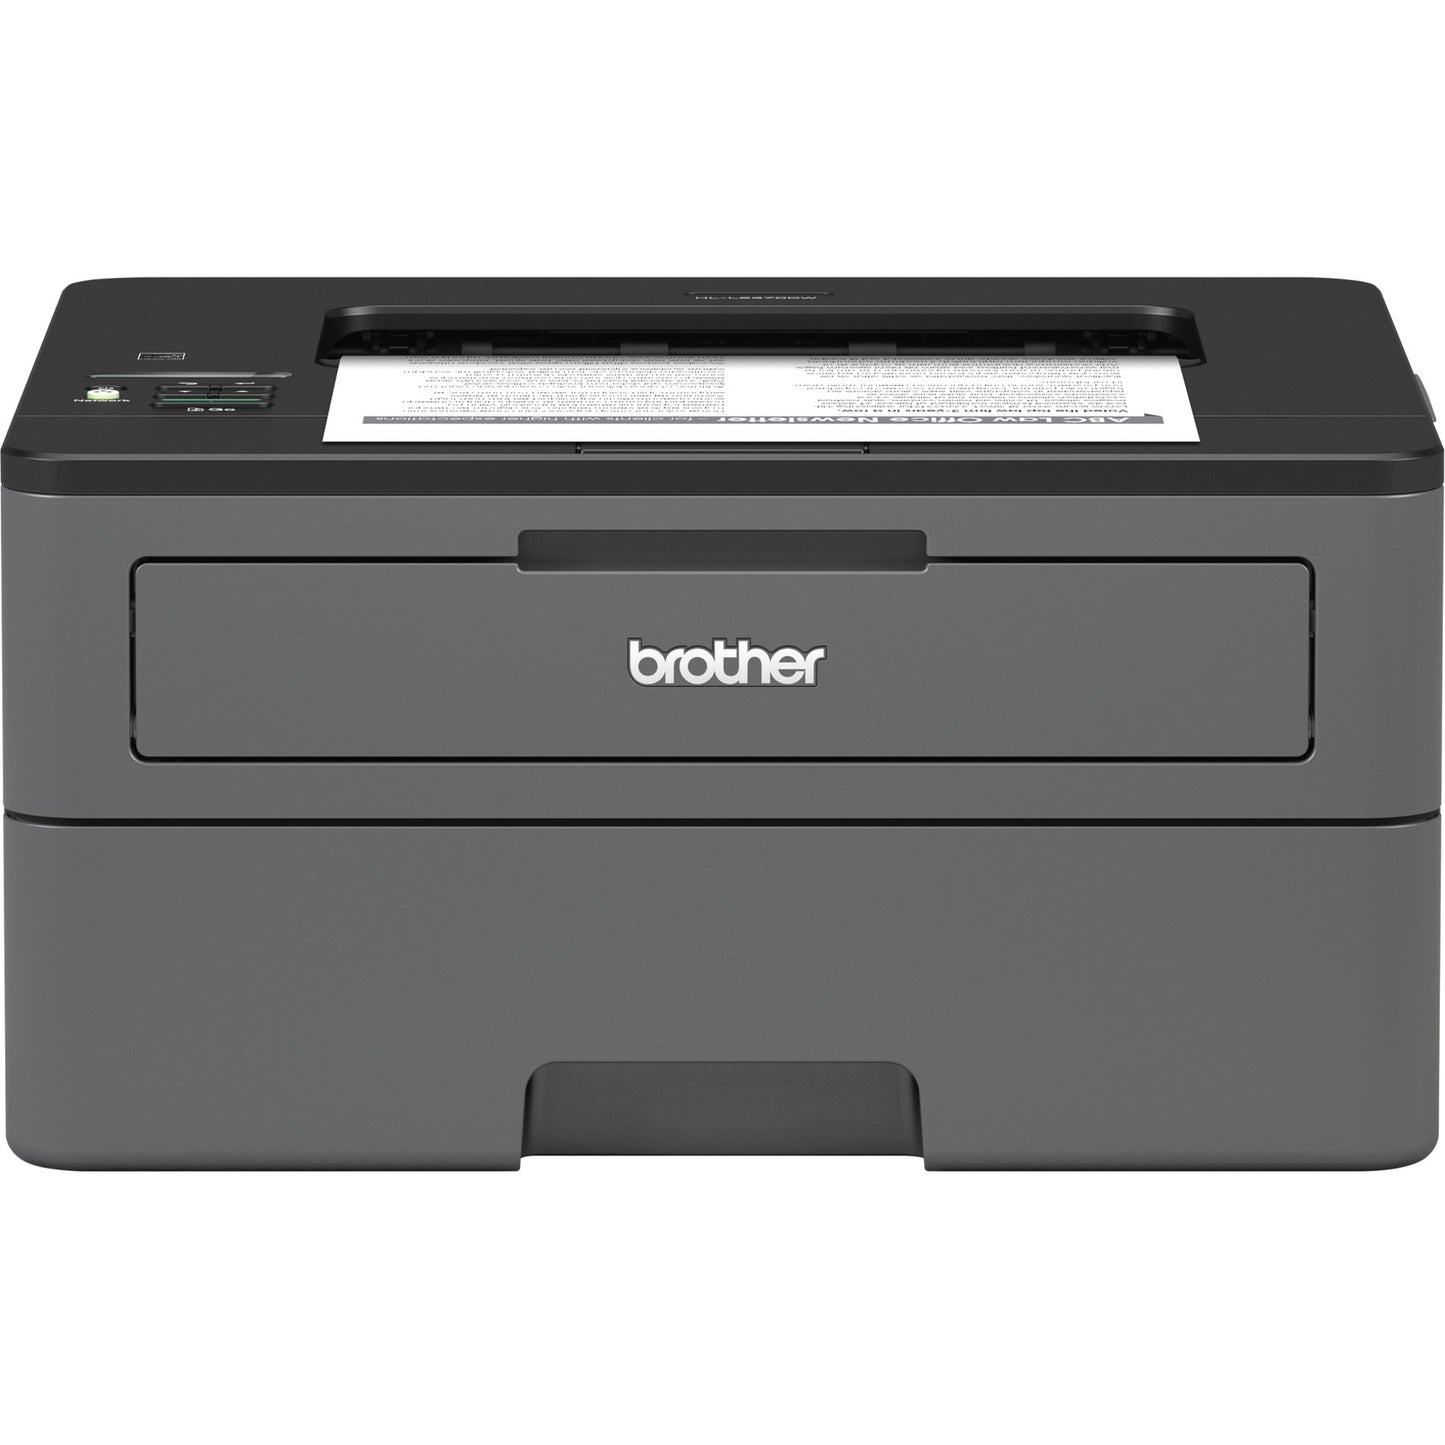 Brother HL HL-L2370DW Desktop Laser Printer - Monochrome